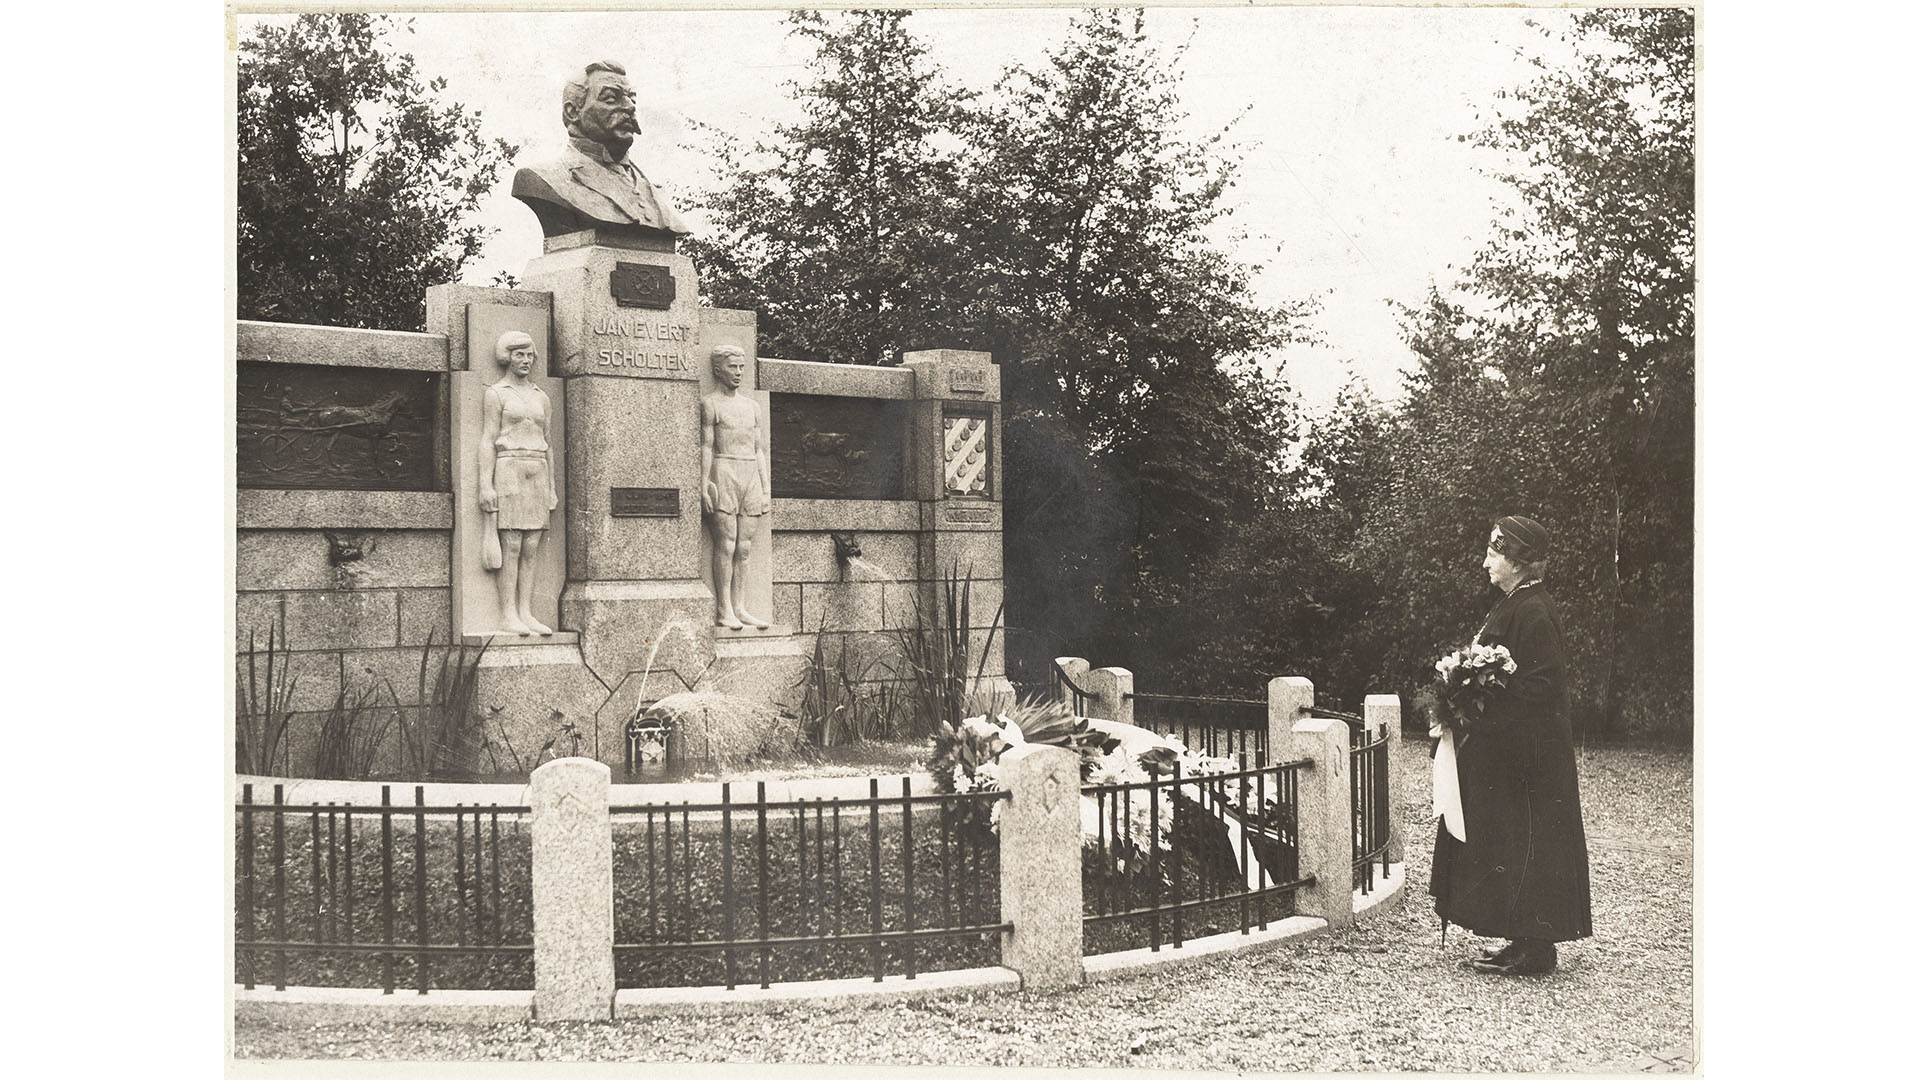 De onthulling van het monument door weduwe Scholten (1931)